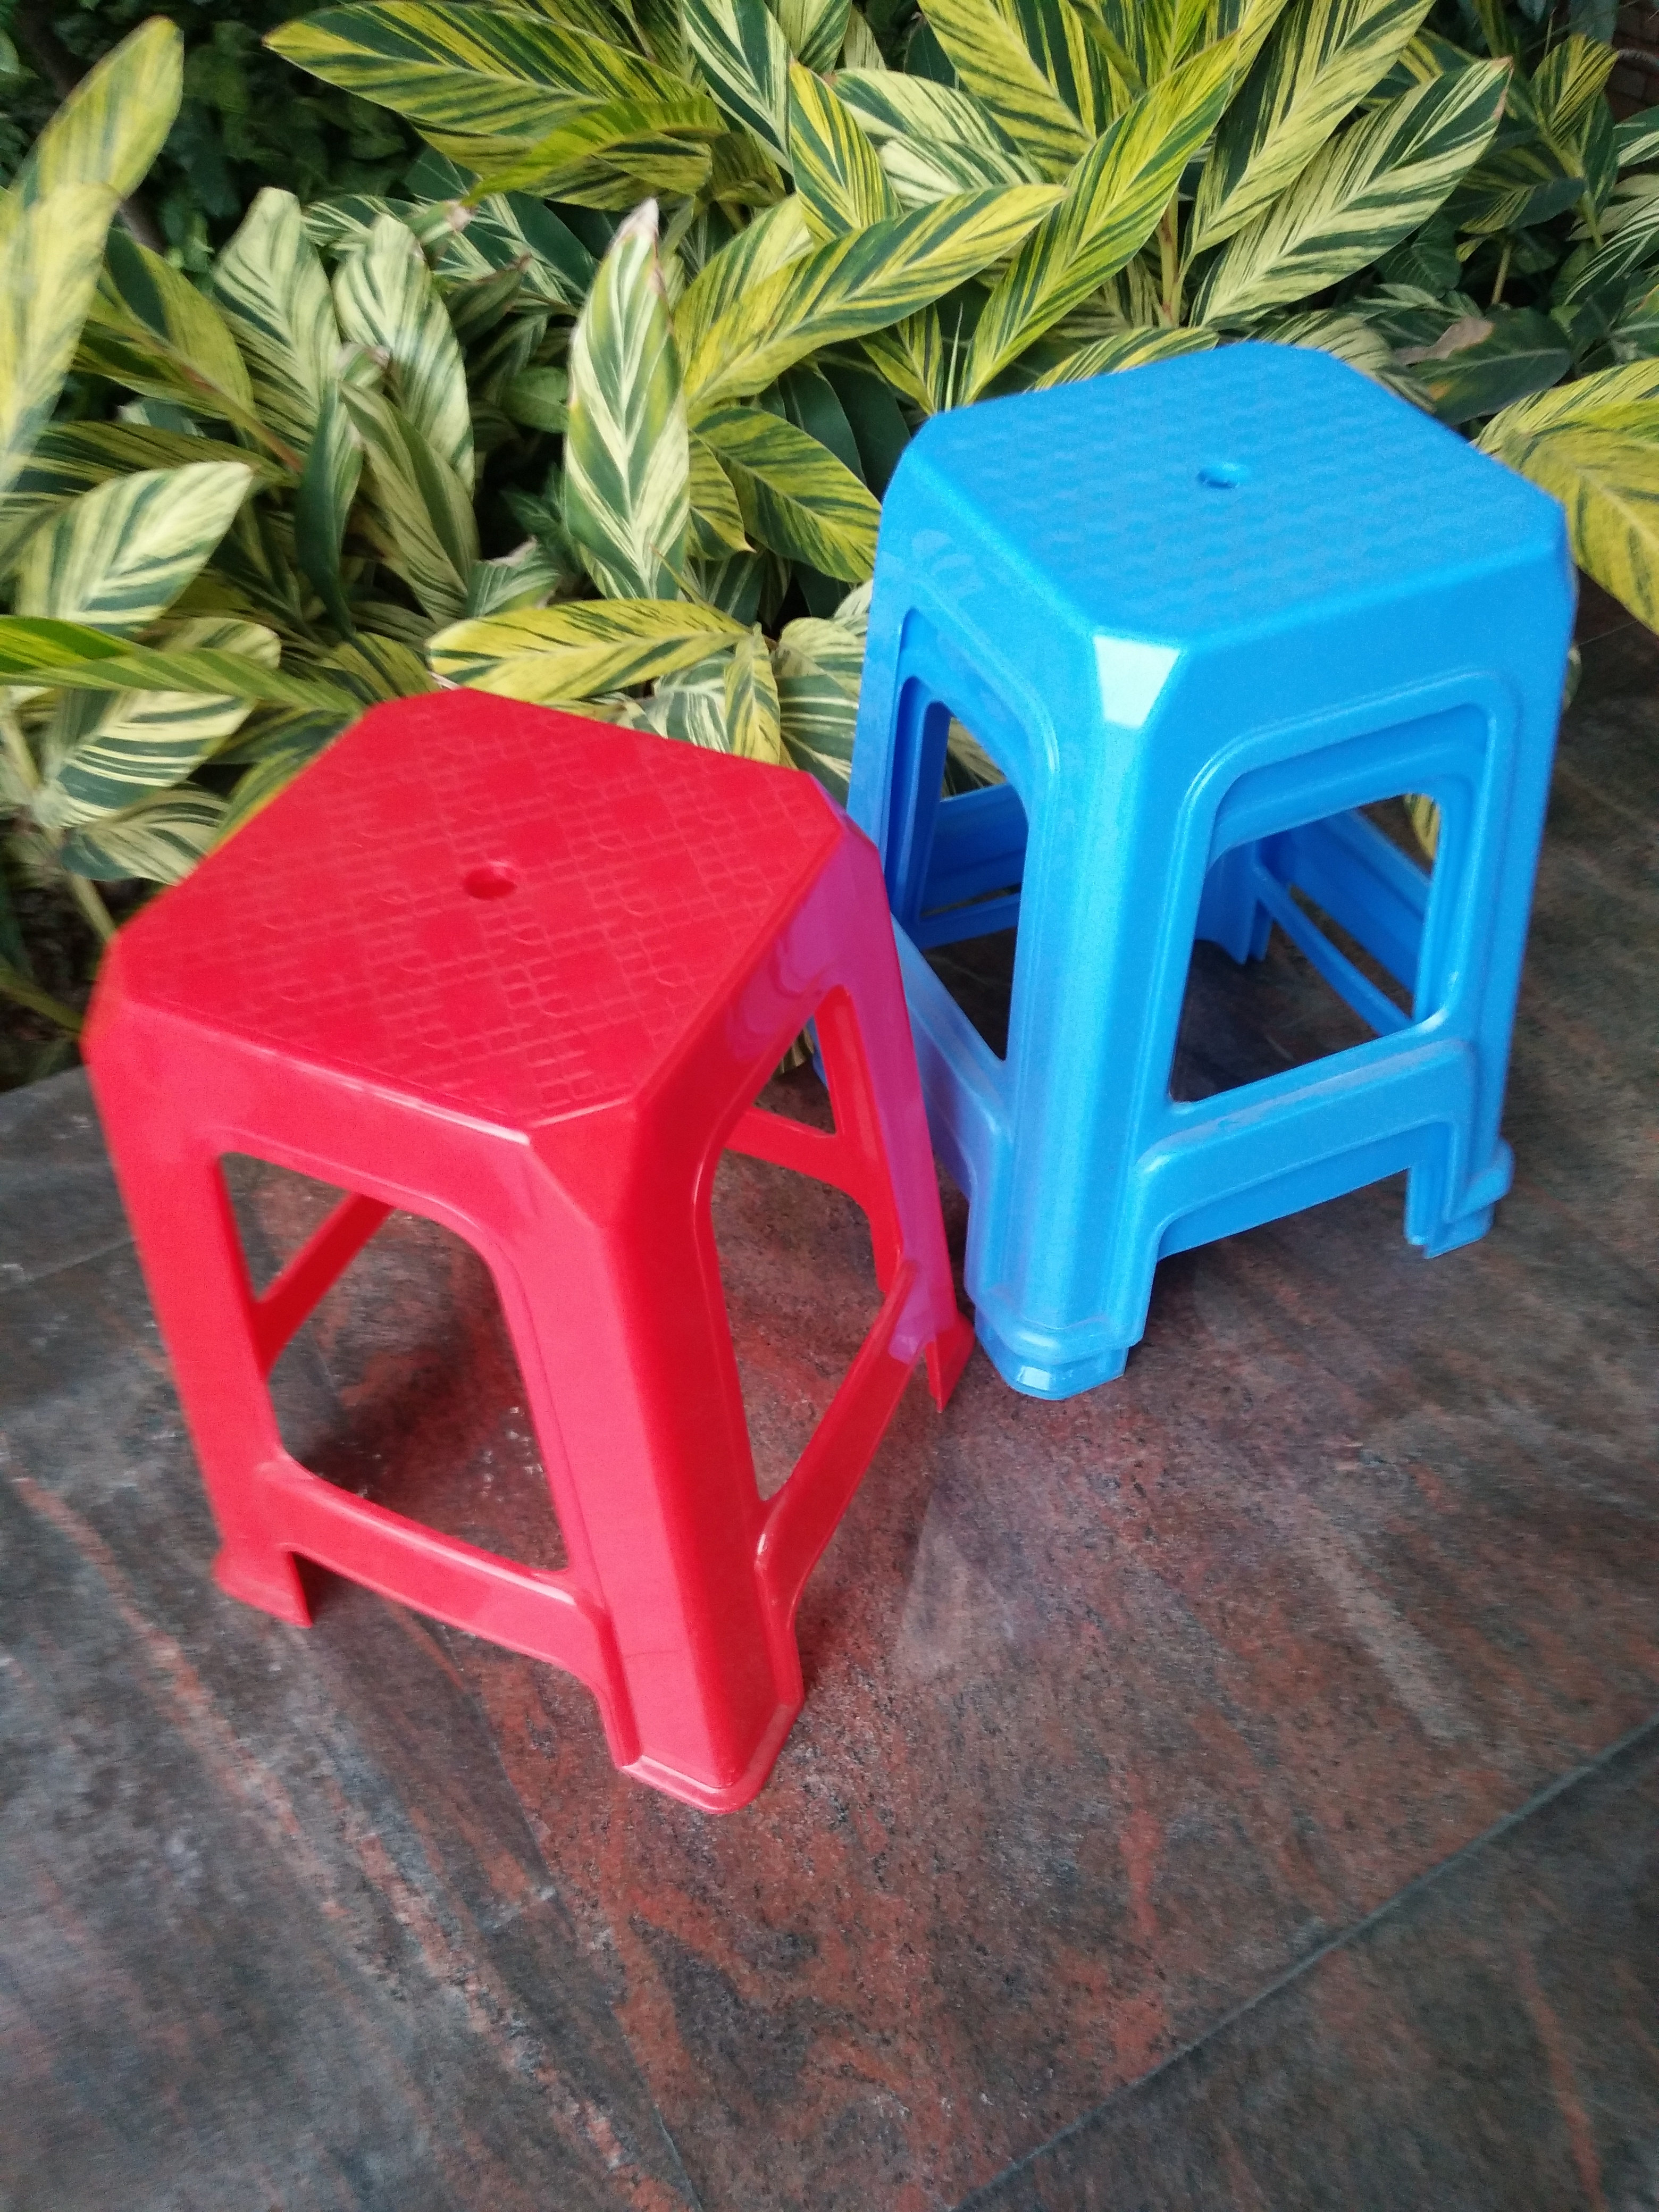 佛山红色加厚塑料方凳生产厂家 蓝色塑胶方凳 塑胶方凳厂家直销 佛山蓝色加厚塑料方凳生产厂家